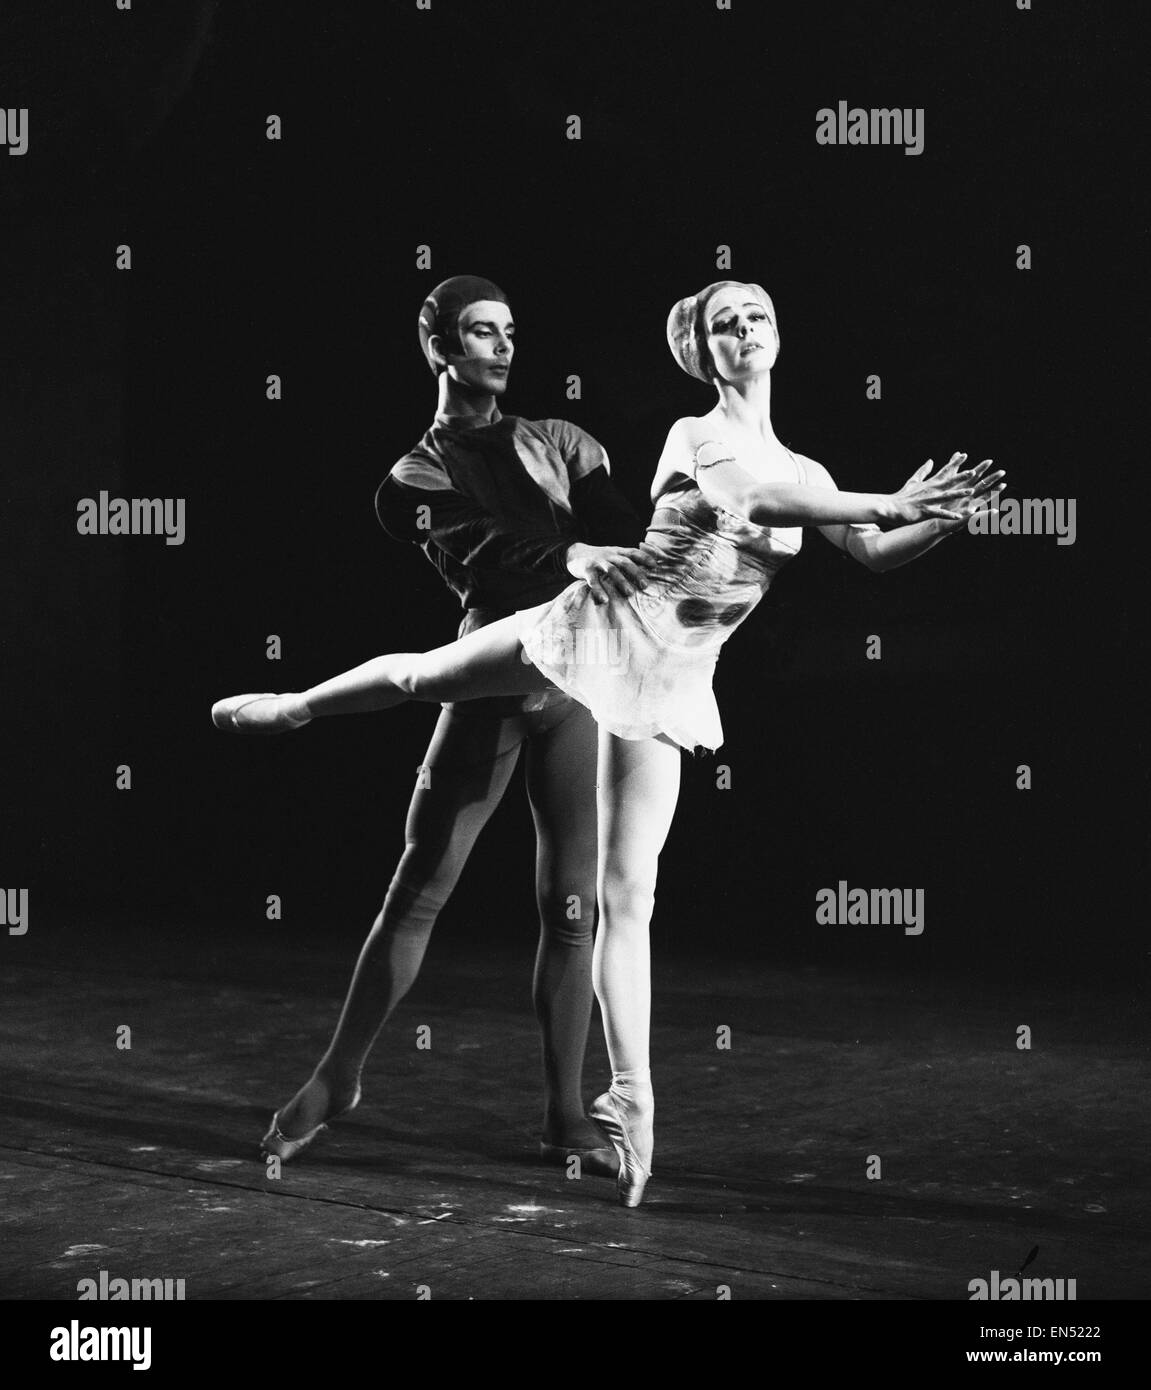 Danseurs de Ballet Antoinette Sibley et Donlad Macleary en répétition sur la scène du Royal Opera House de Covent Garden pour leur part dans le nouveau ballet "Symphony" par Kenneth MacMillan. 14 février 1963. Banque D'Images